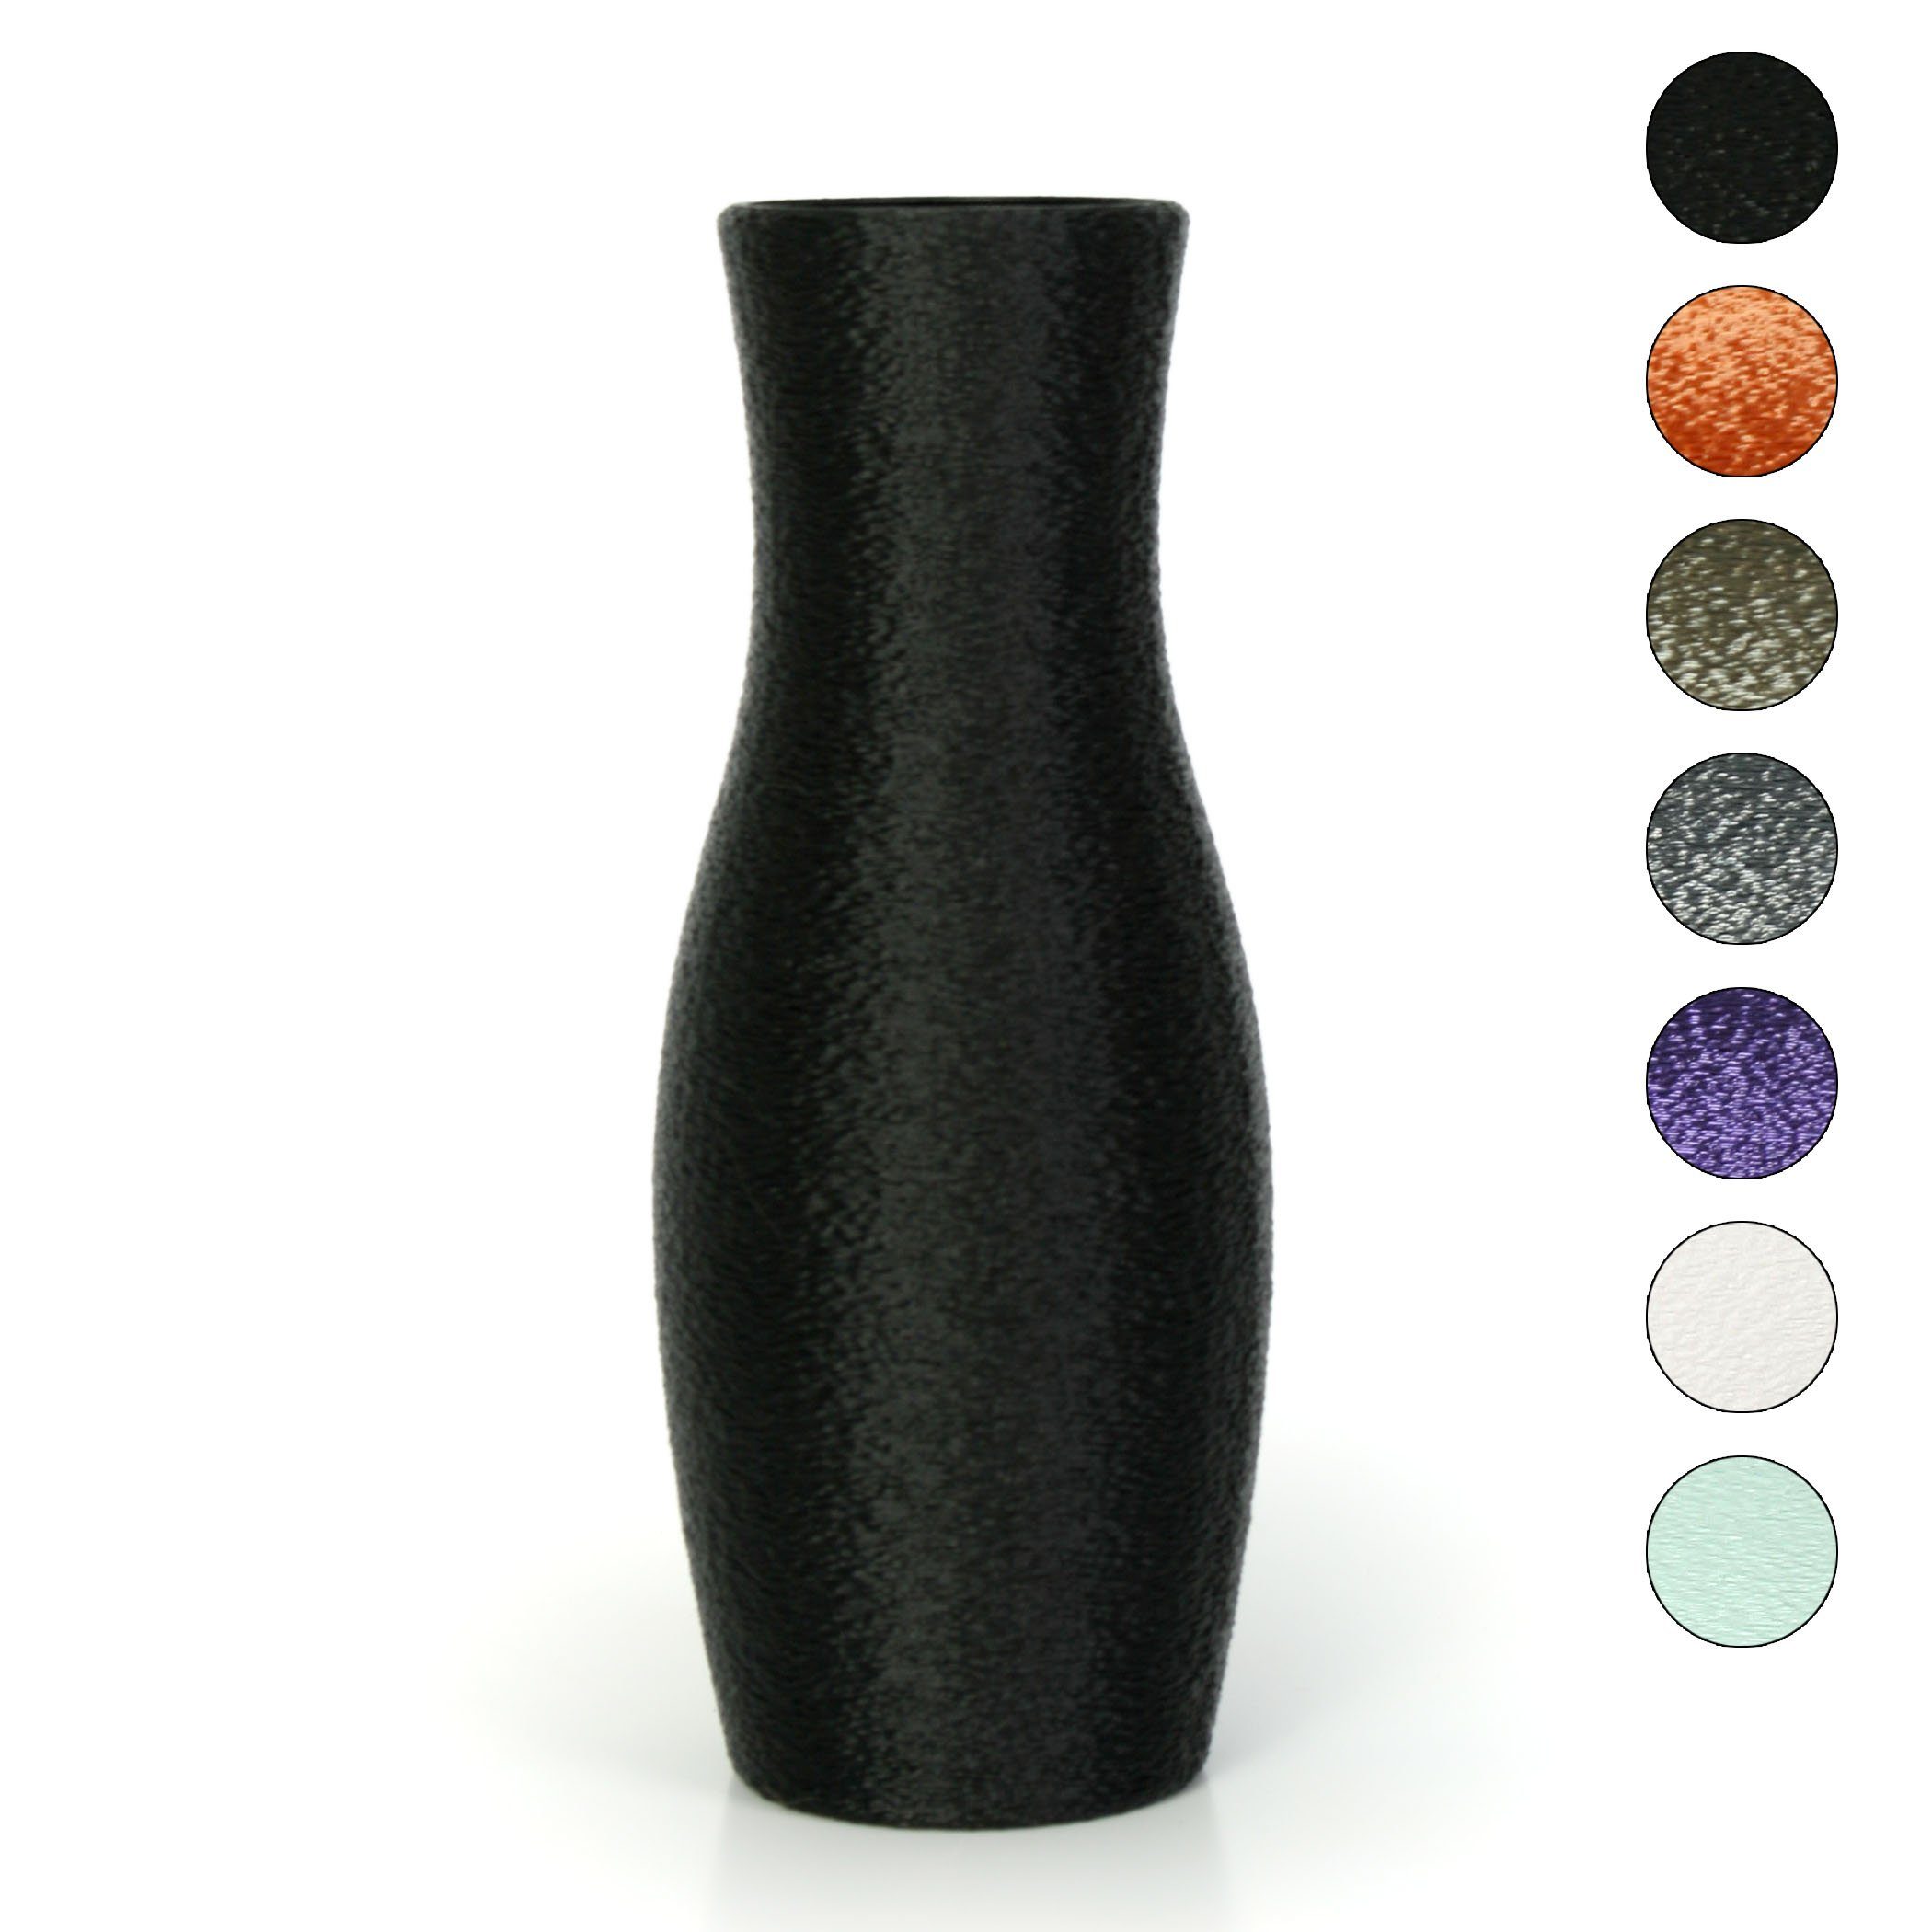 Kreative Feder Dekovase bruchsicher Dekorative Vase Blumenvase wasserdicht Designer & – Rohstoffen; aus aus Bio-Kunststoff, Black nachwachsenden